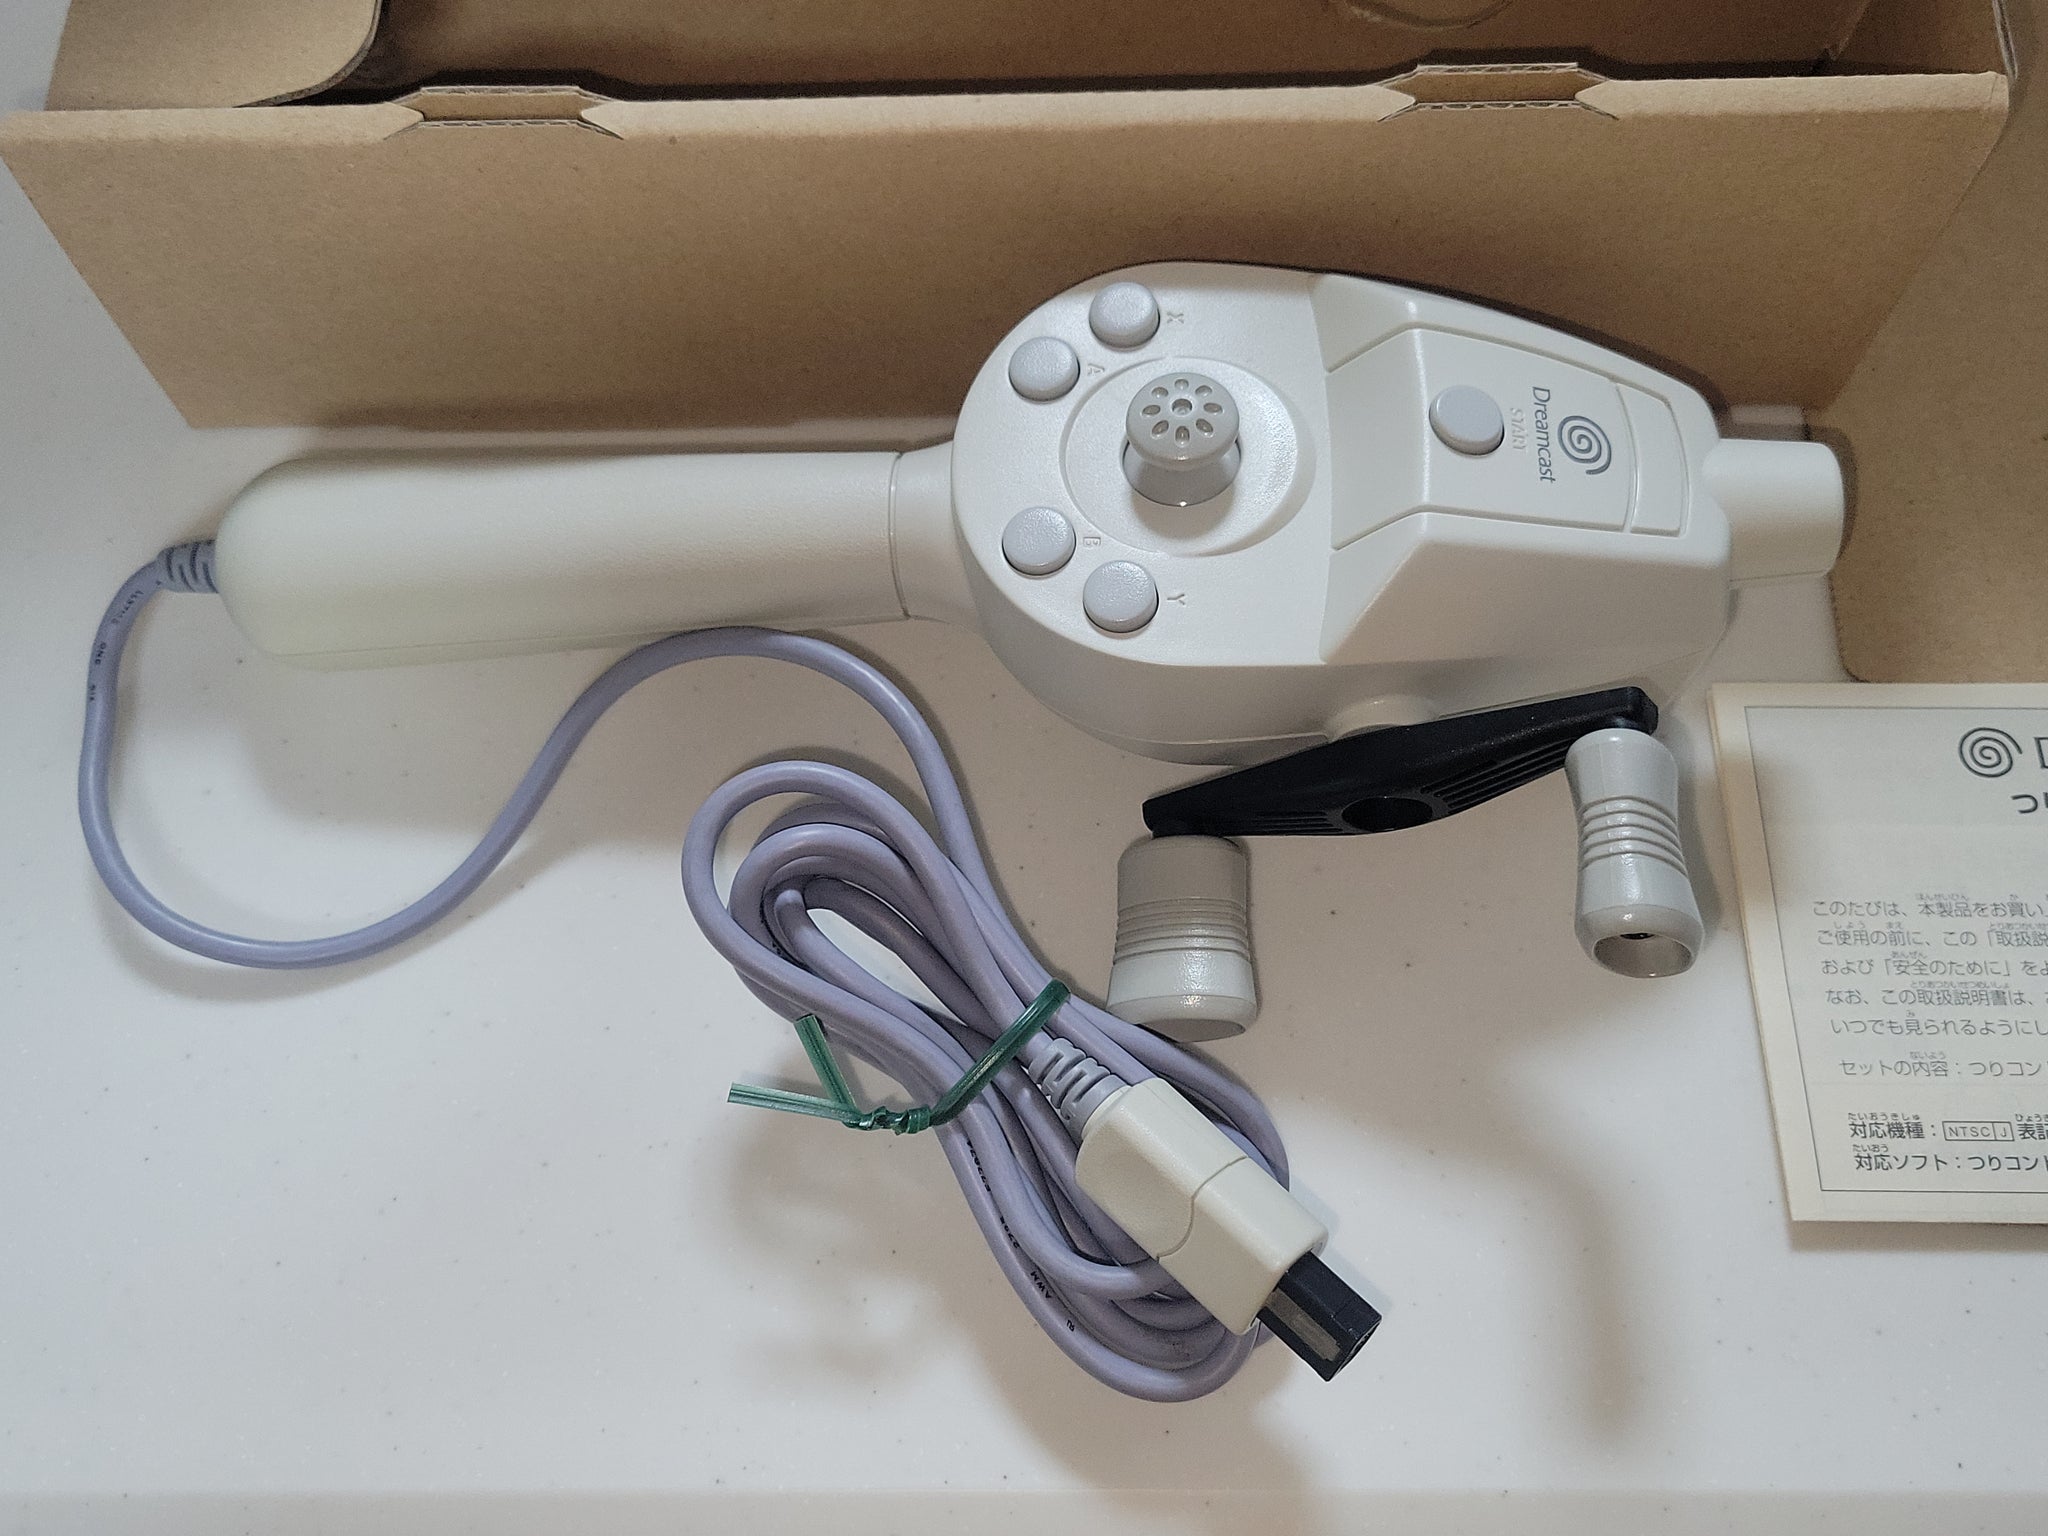 Get Bass + controller set - Sega dc Dreamcast – The Emporium